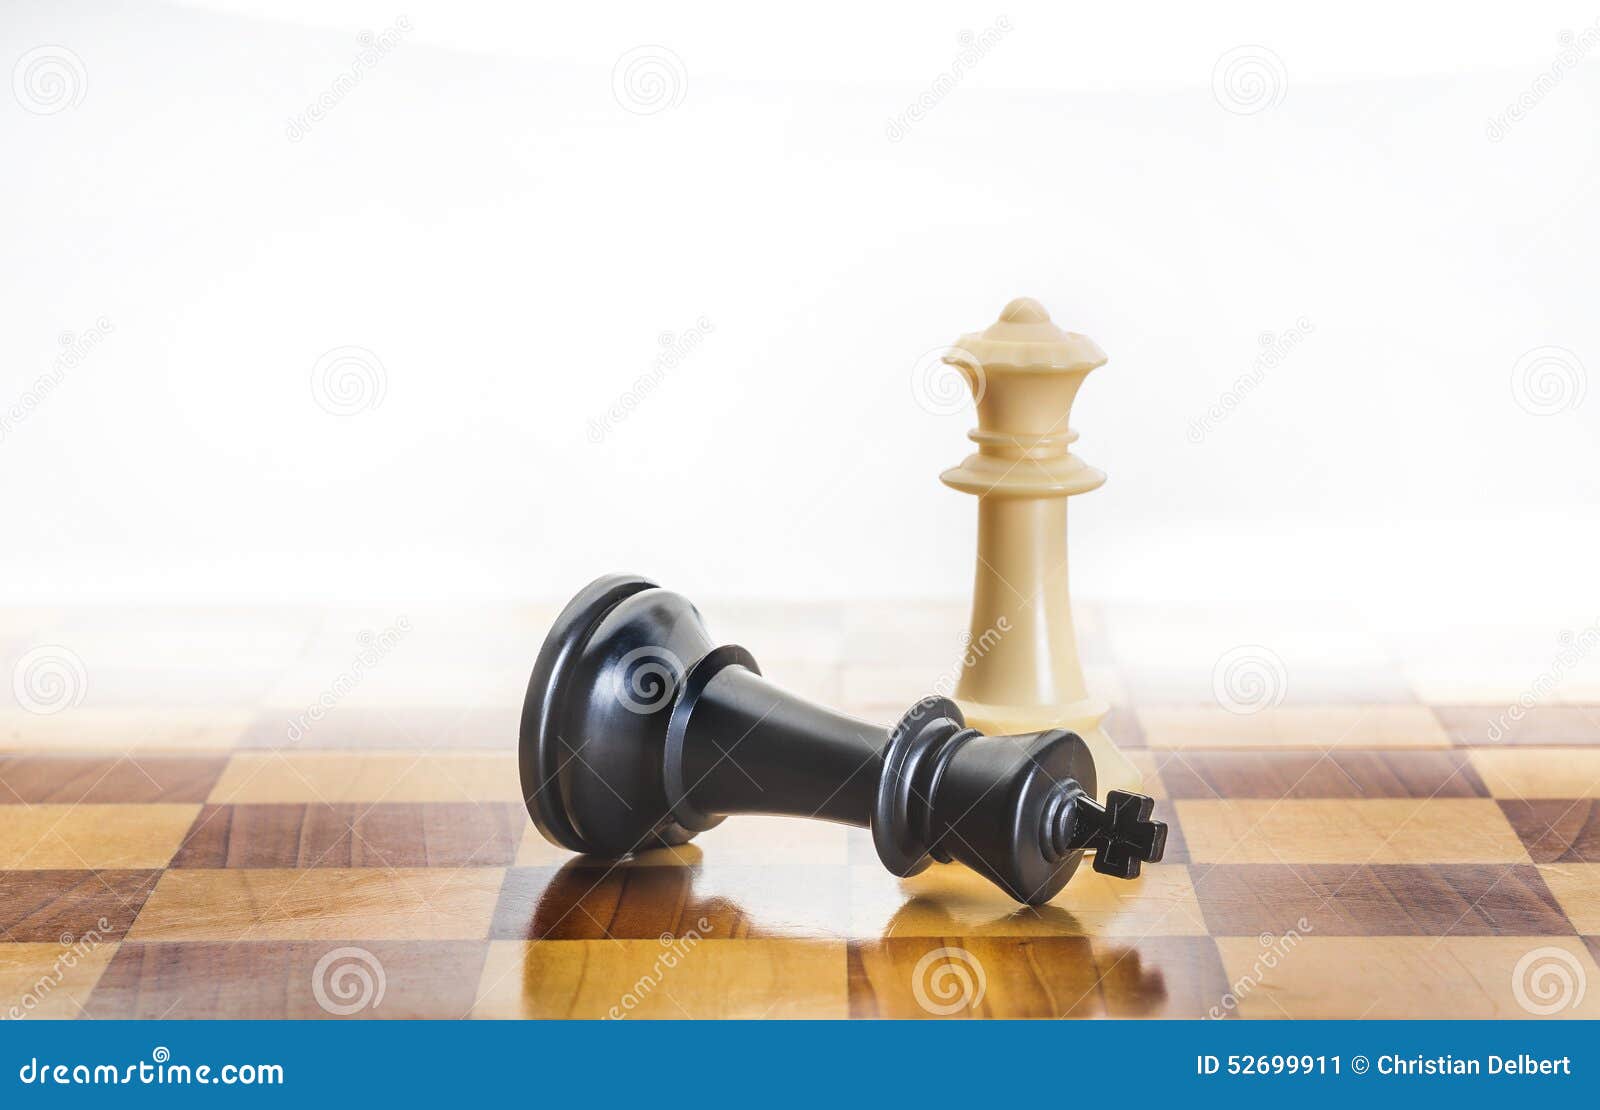 Por que o Rei é tão importante no xadrez, ainda que ele não tenha nenhum  poder? Sem o Rei, não há xadrez. Por que o jogo foi feito assim? - Quora